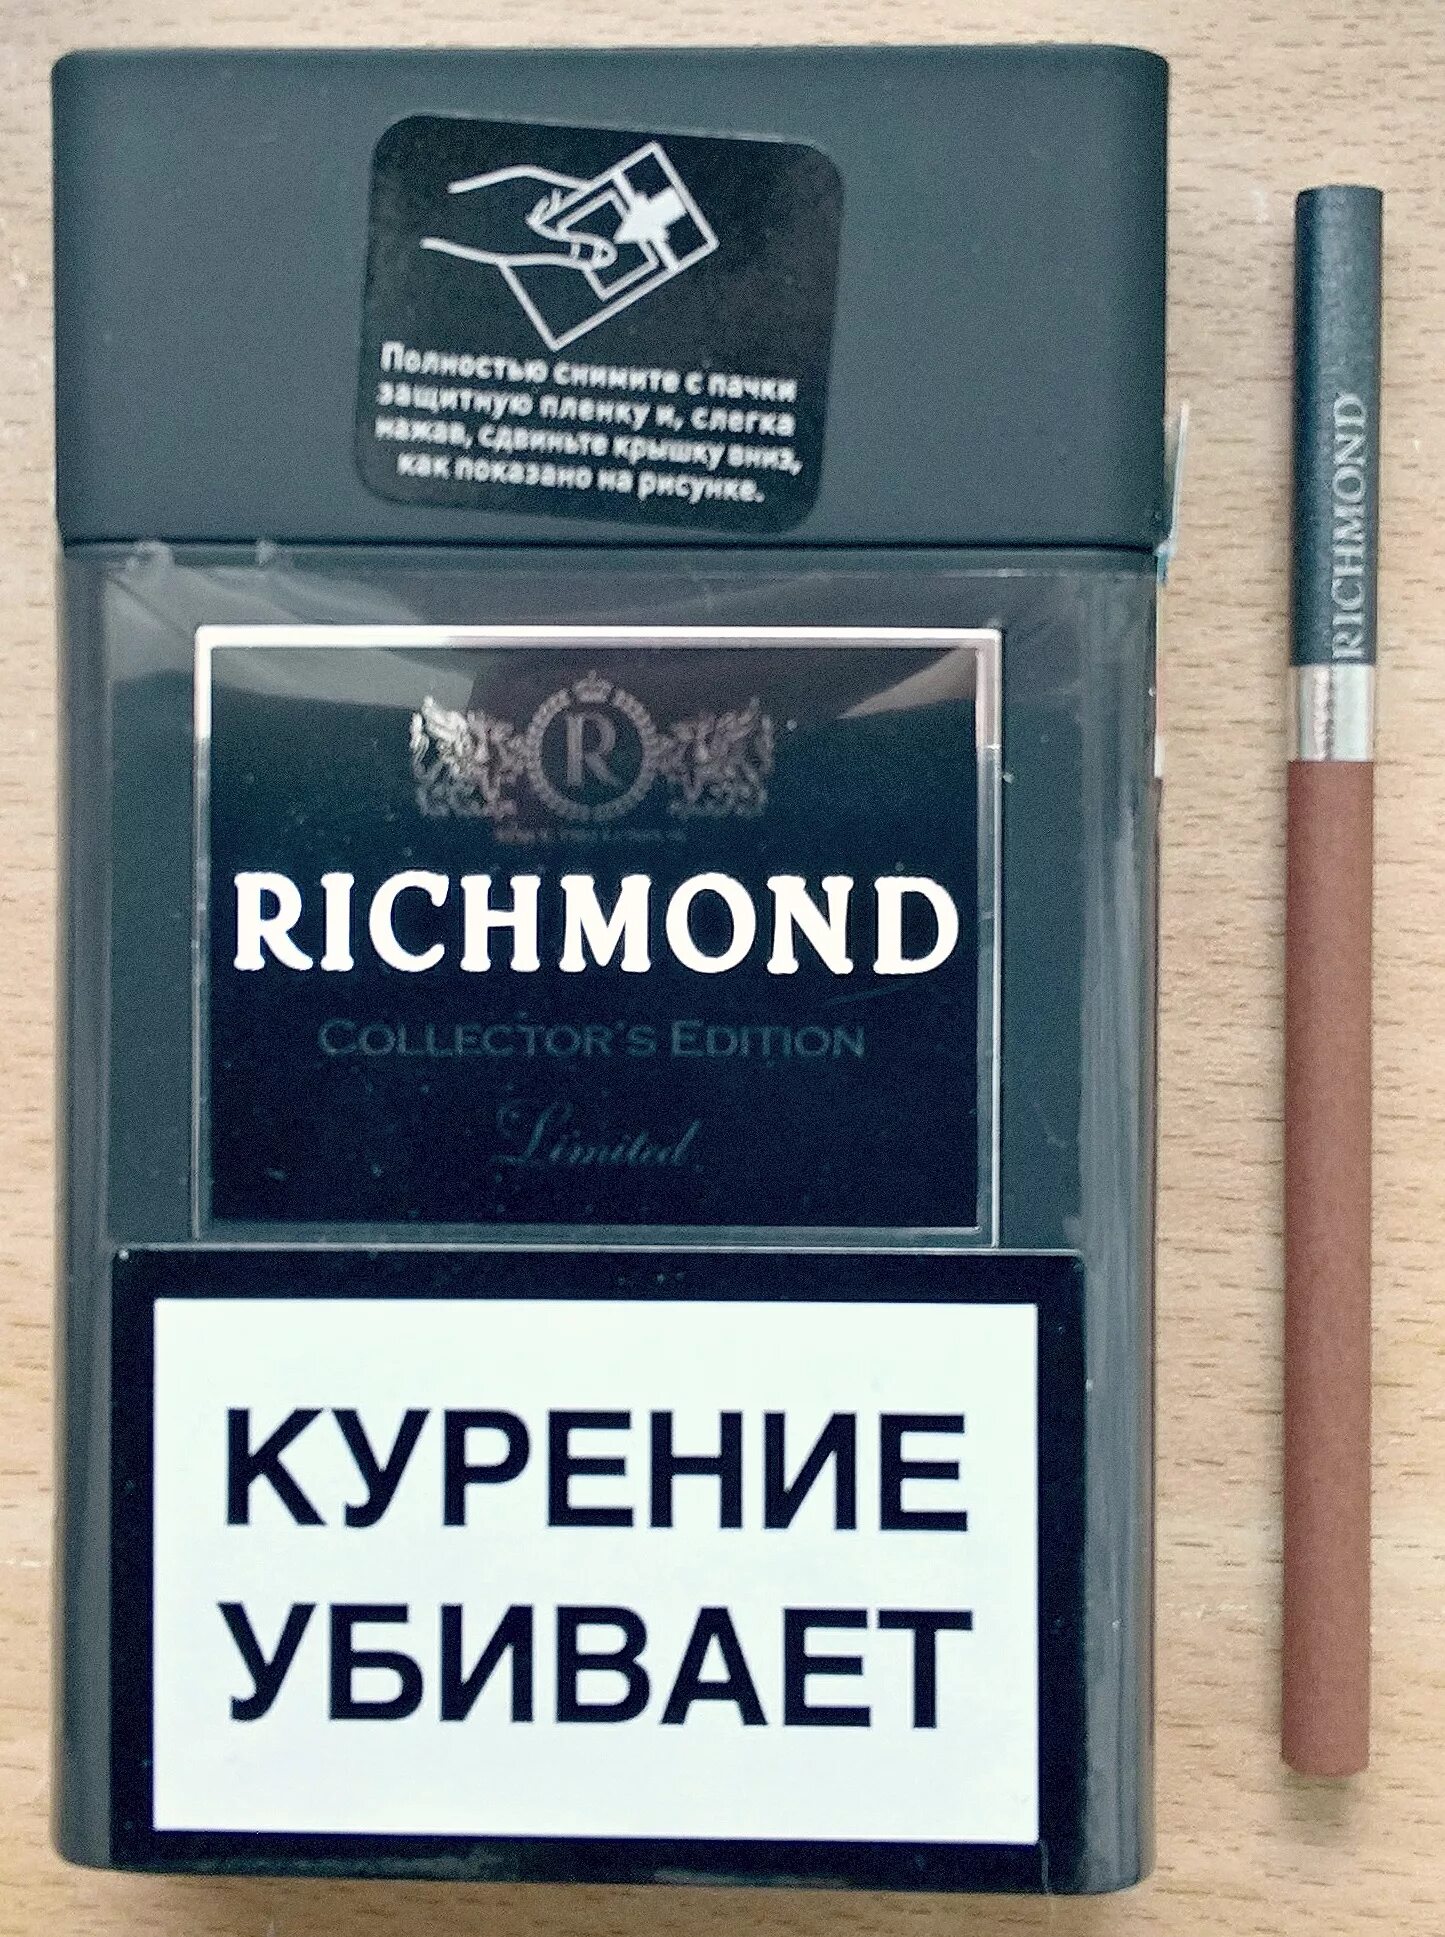 Ричмонд сигареты шоколадные. Сигареты Ричмонд Блэк эдитион. Sobranie Richmond сигареты. Сигареты Richmond Compact.